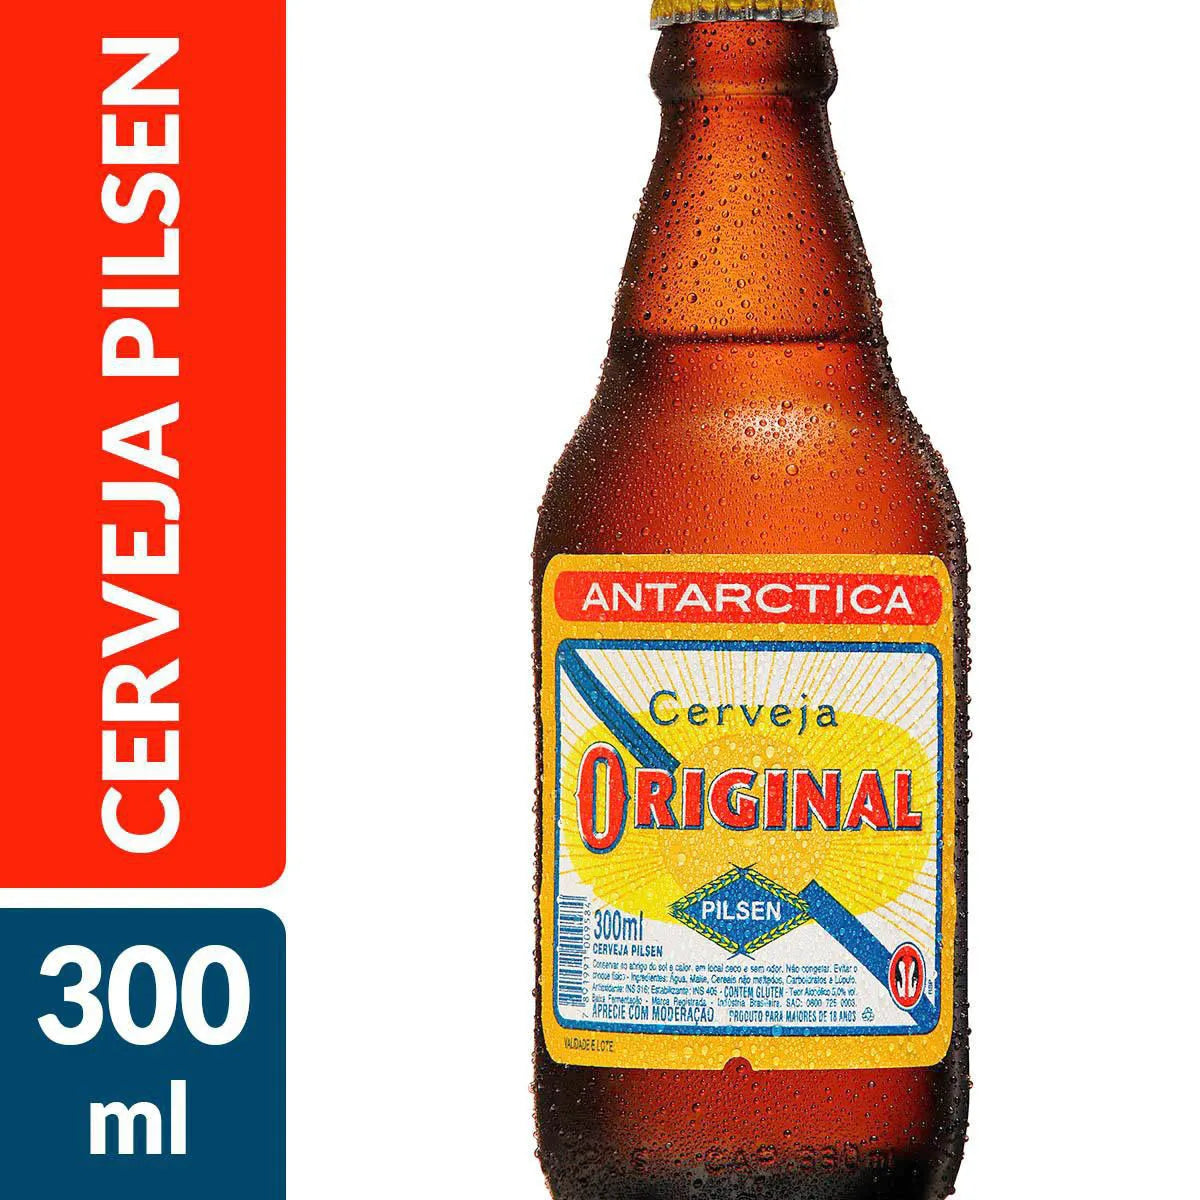 Cerveja Original Garrafa Pack 12 unidades (300ml) - Original Beer Bottle Pack 12 units (300ml)